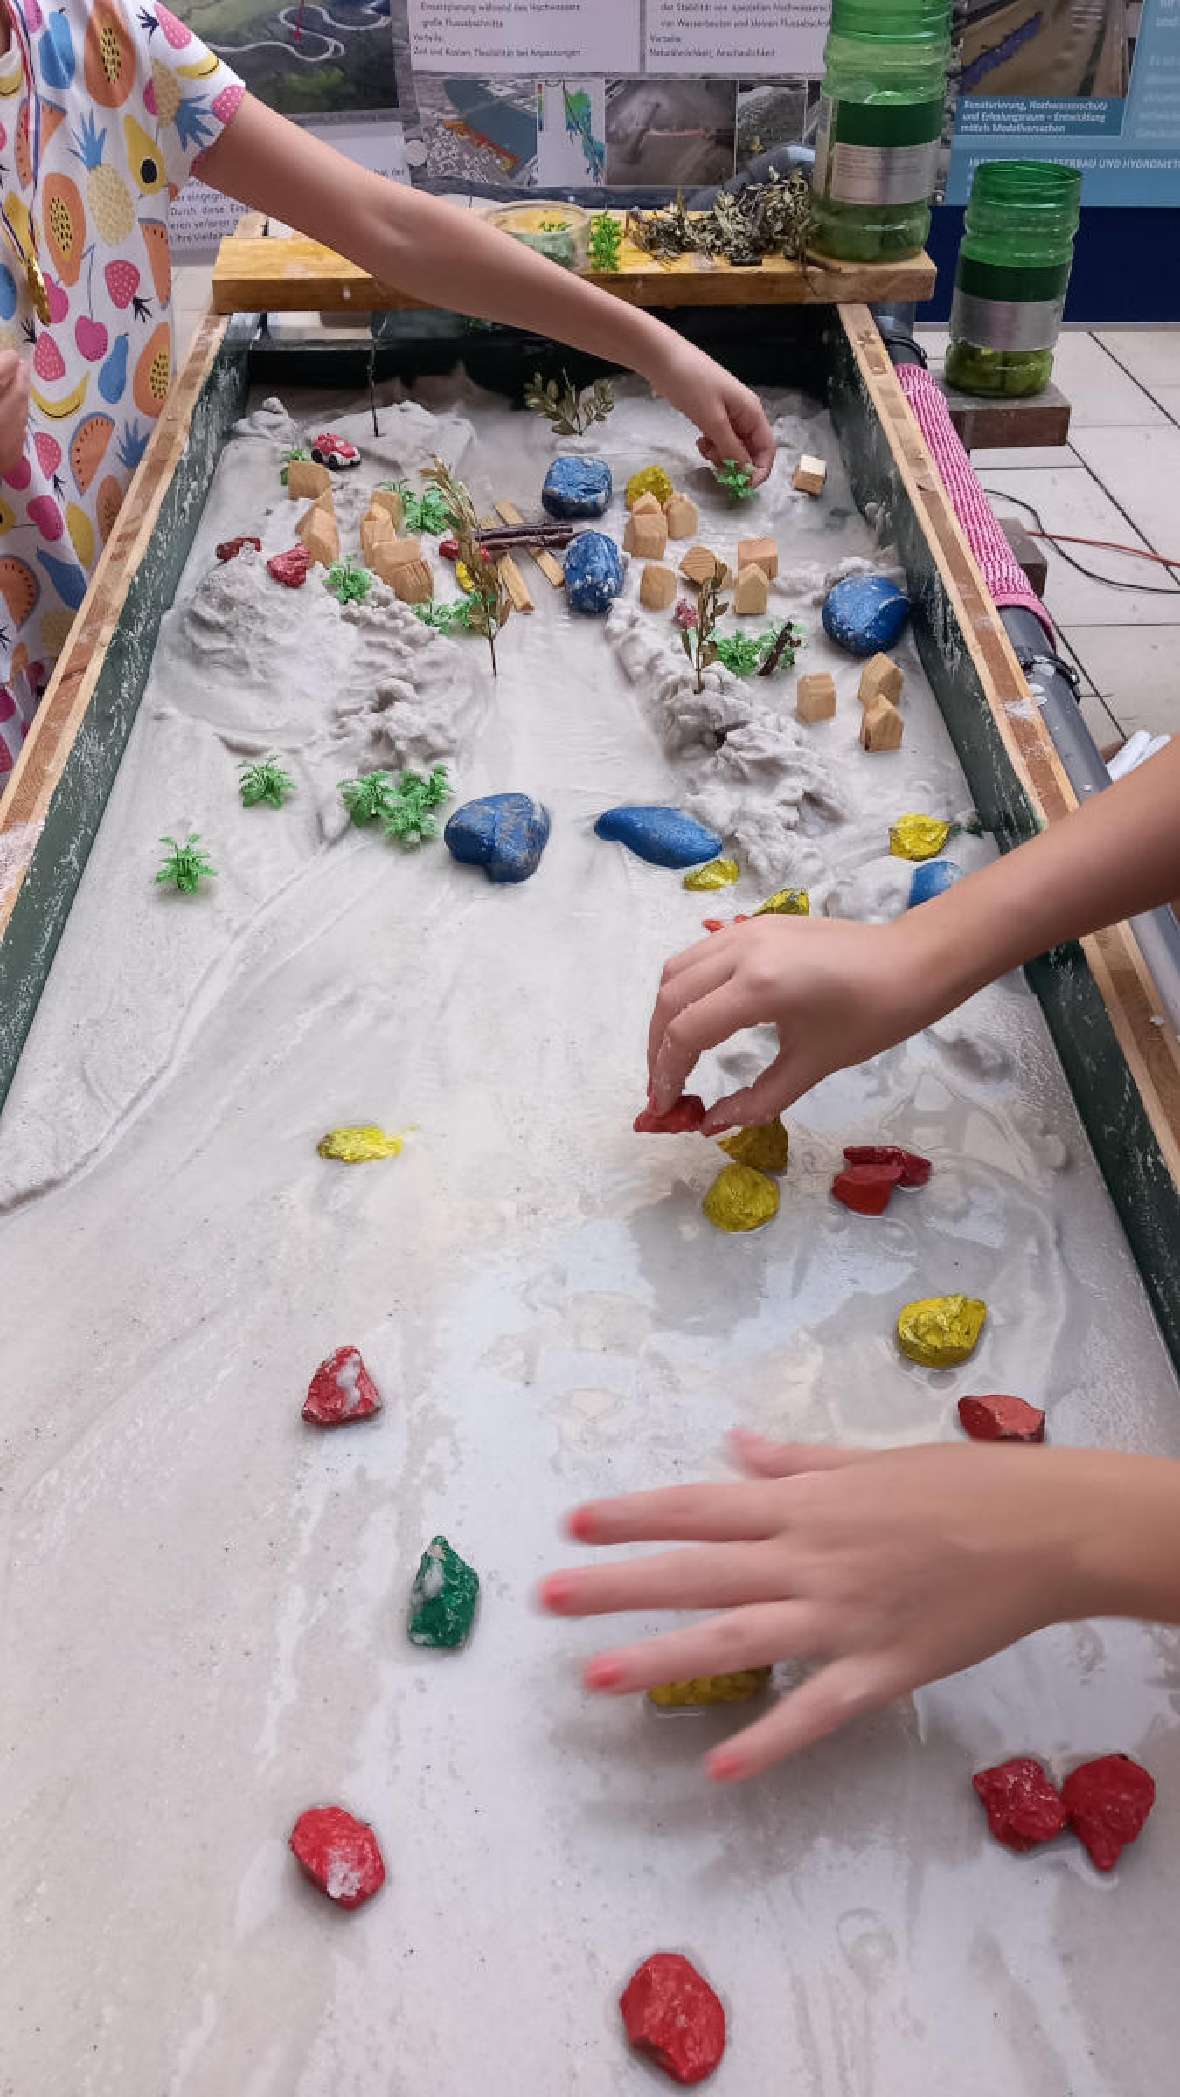 Das Bild zeigt die circa 1 Meter breite Rinne unseres Modellflusses, die mit feinem Sand gefüllt ist. Kinder stehen links und rechts vom Modellfluss und bauen mit bunten Steinen ihren eigenen Fluss.